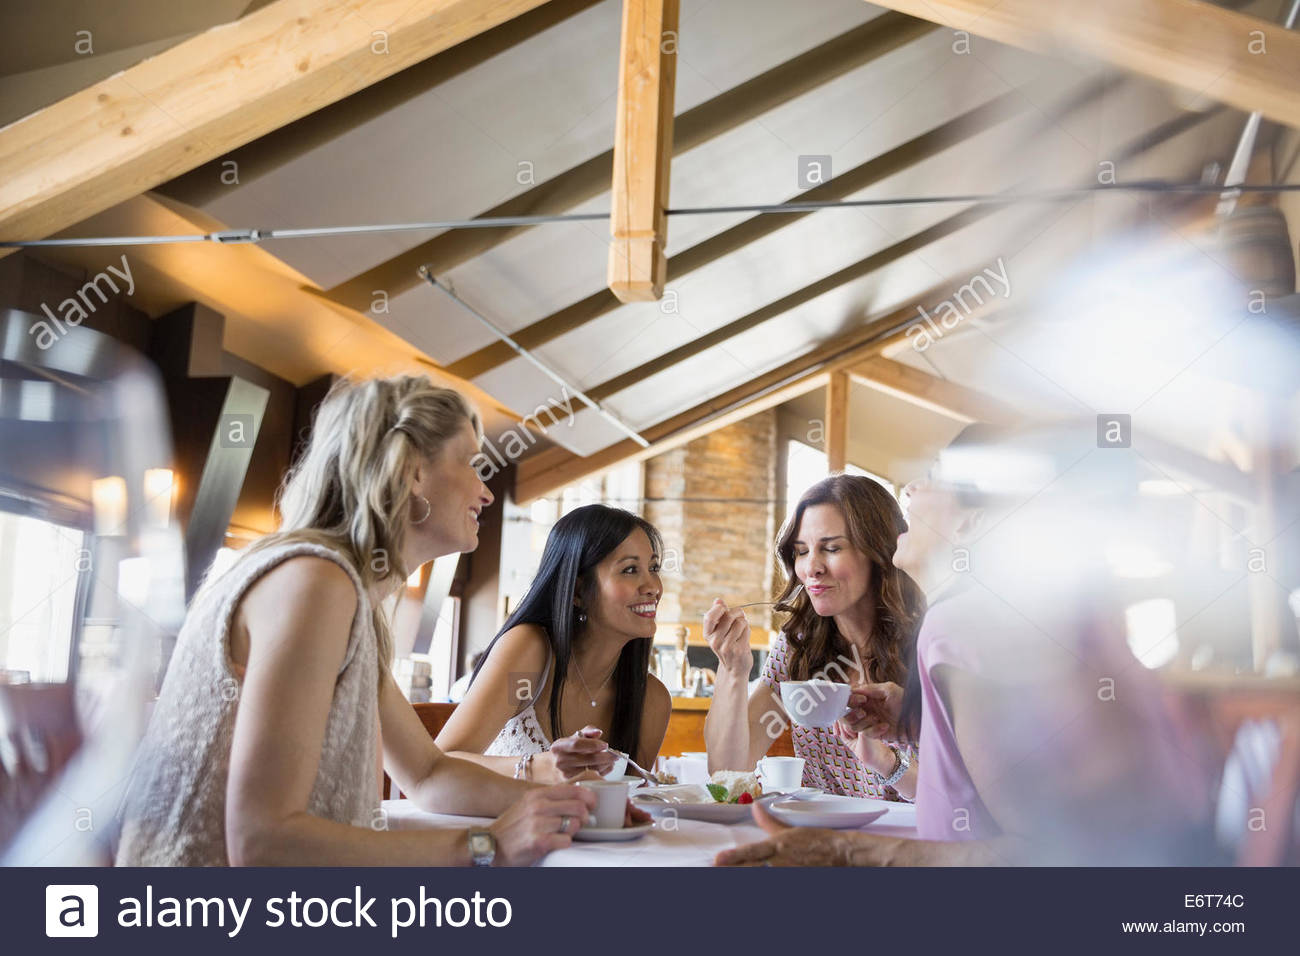 Les femmes mangent ensemble au restaurant Banque D'Images